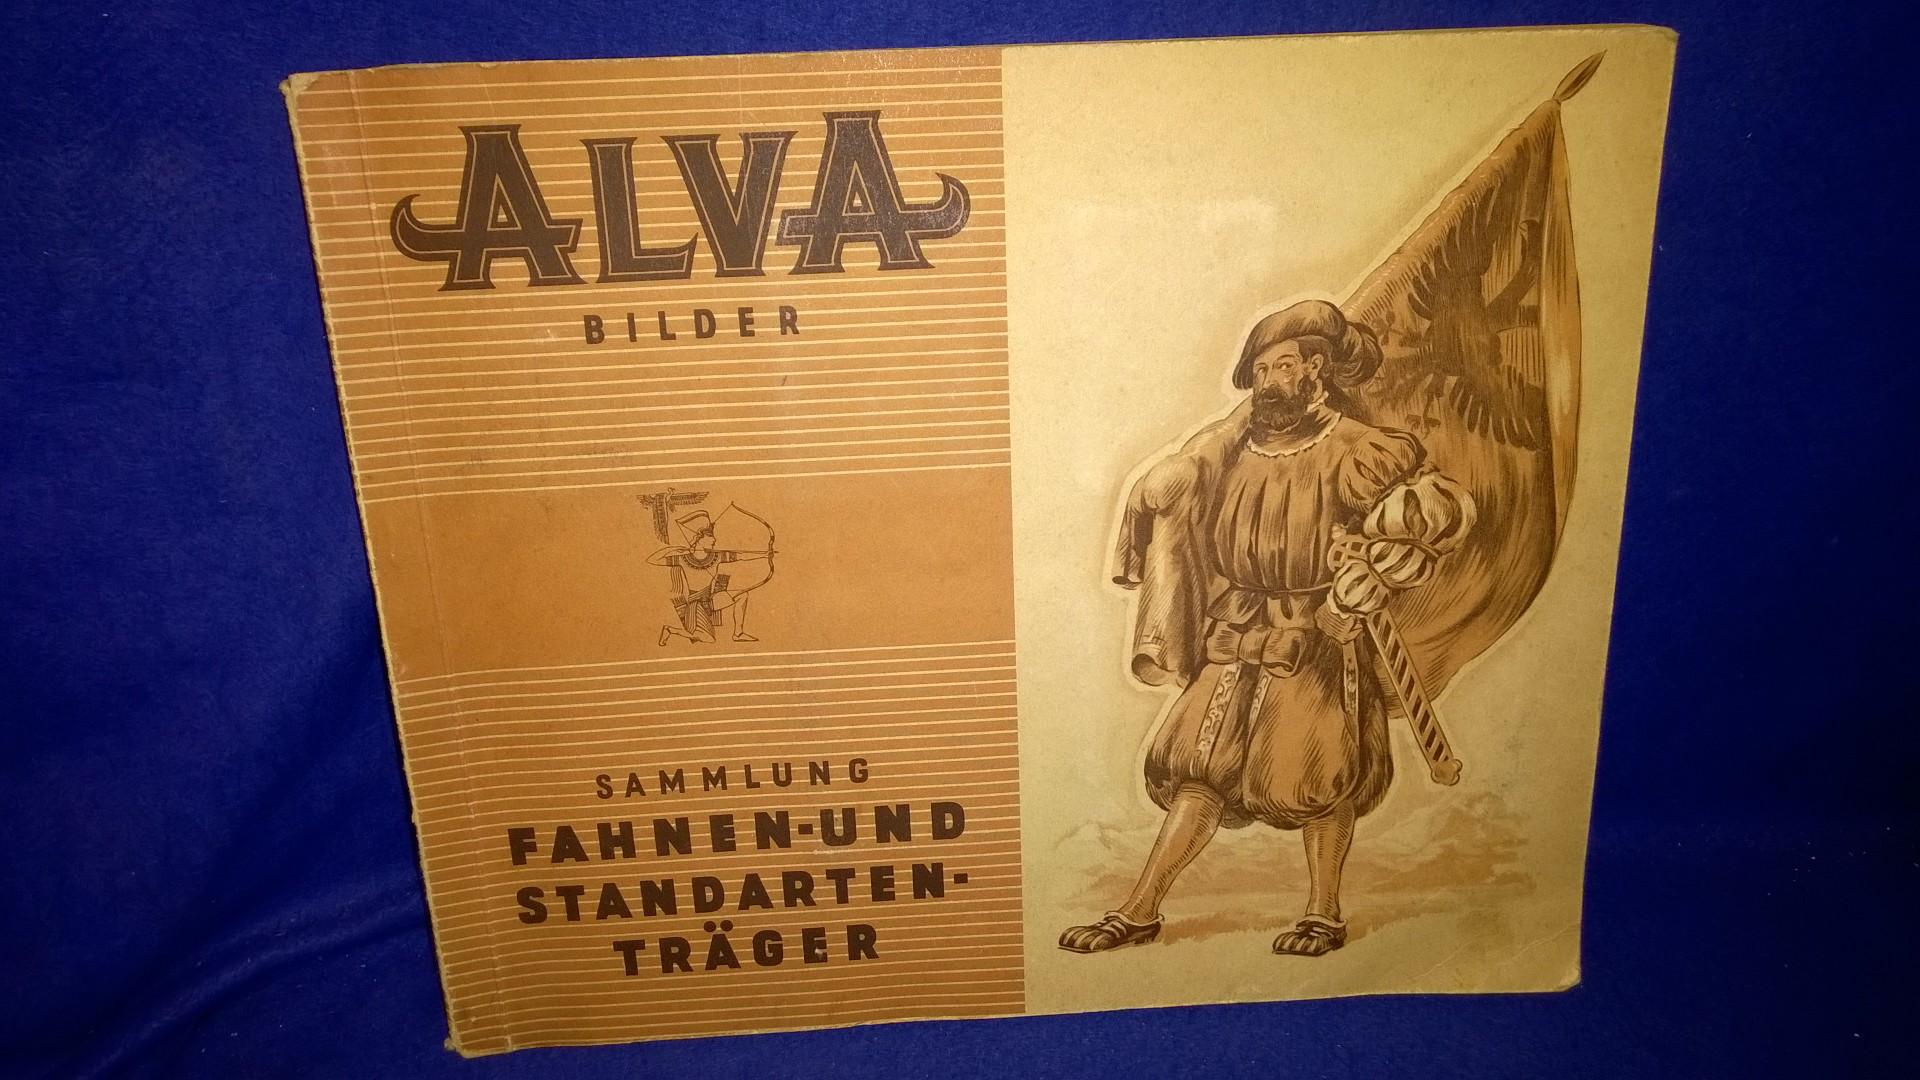 Alva Bilder. Fahnen- und Standarten-Träger. Album 1.